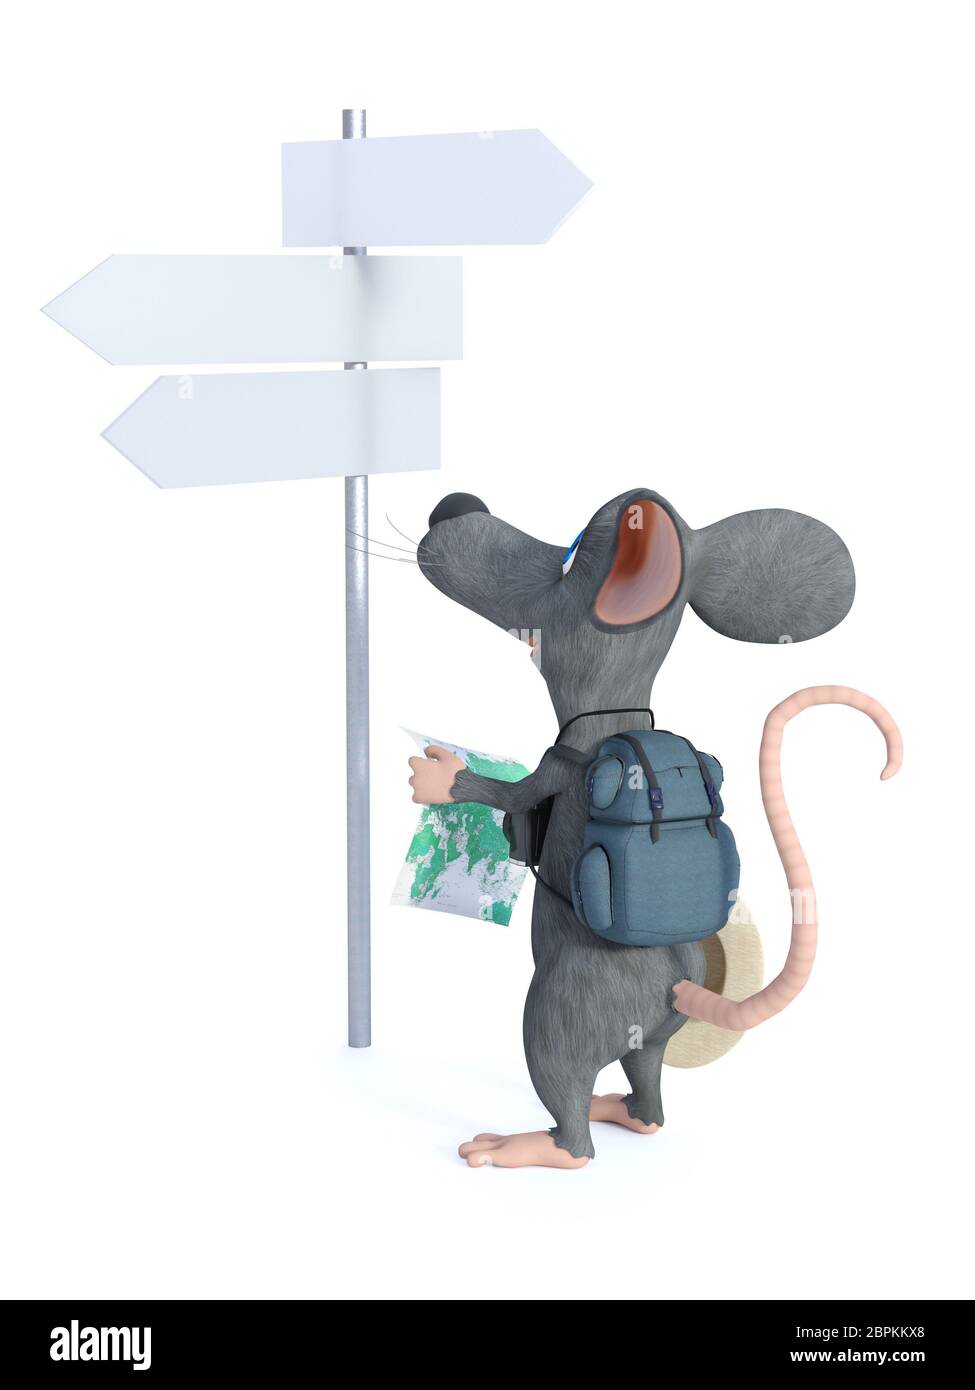 3D-Rendering von einem netten Lächeln cartoon Maus wie ein Tourist mit seinem Rucksack und halten Sie eine Karte und eine leere Straße unterzeichnen. Er scheint r Stockfoto